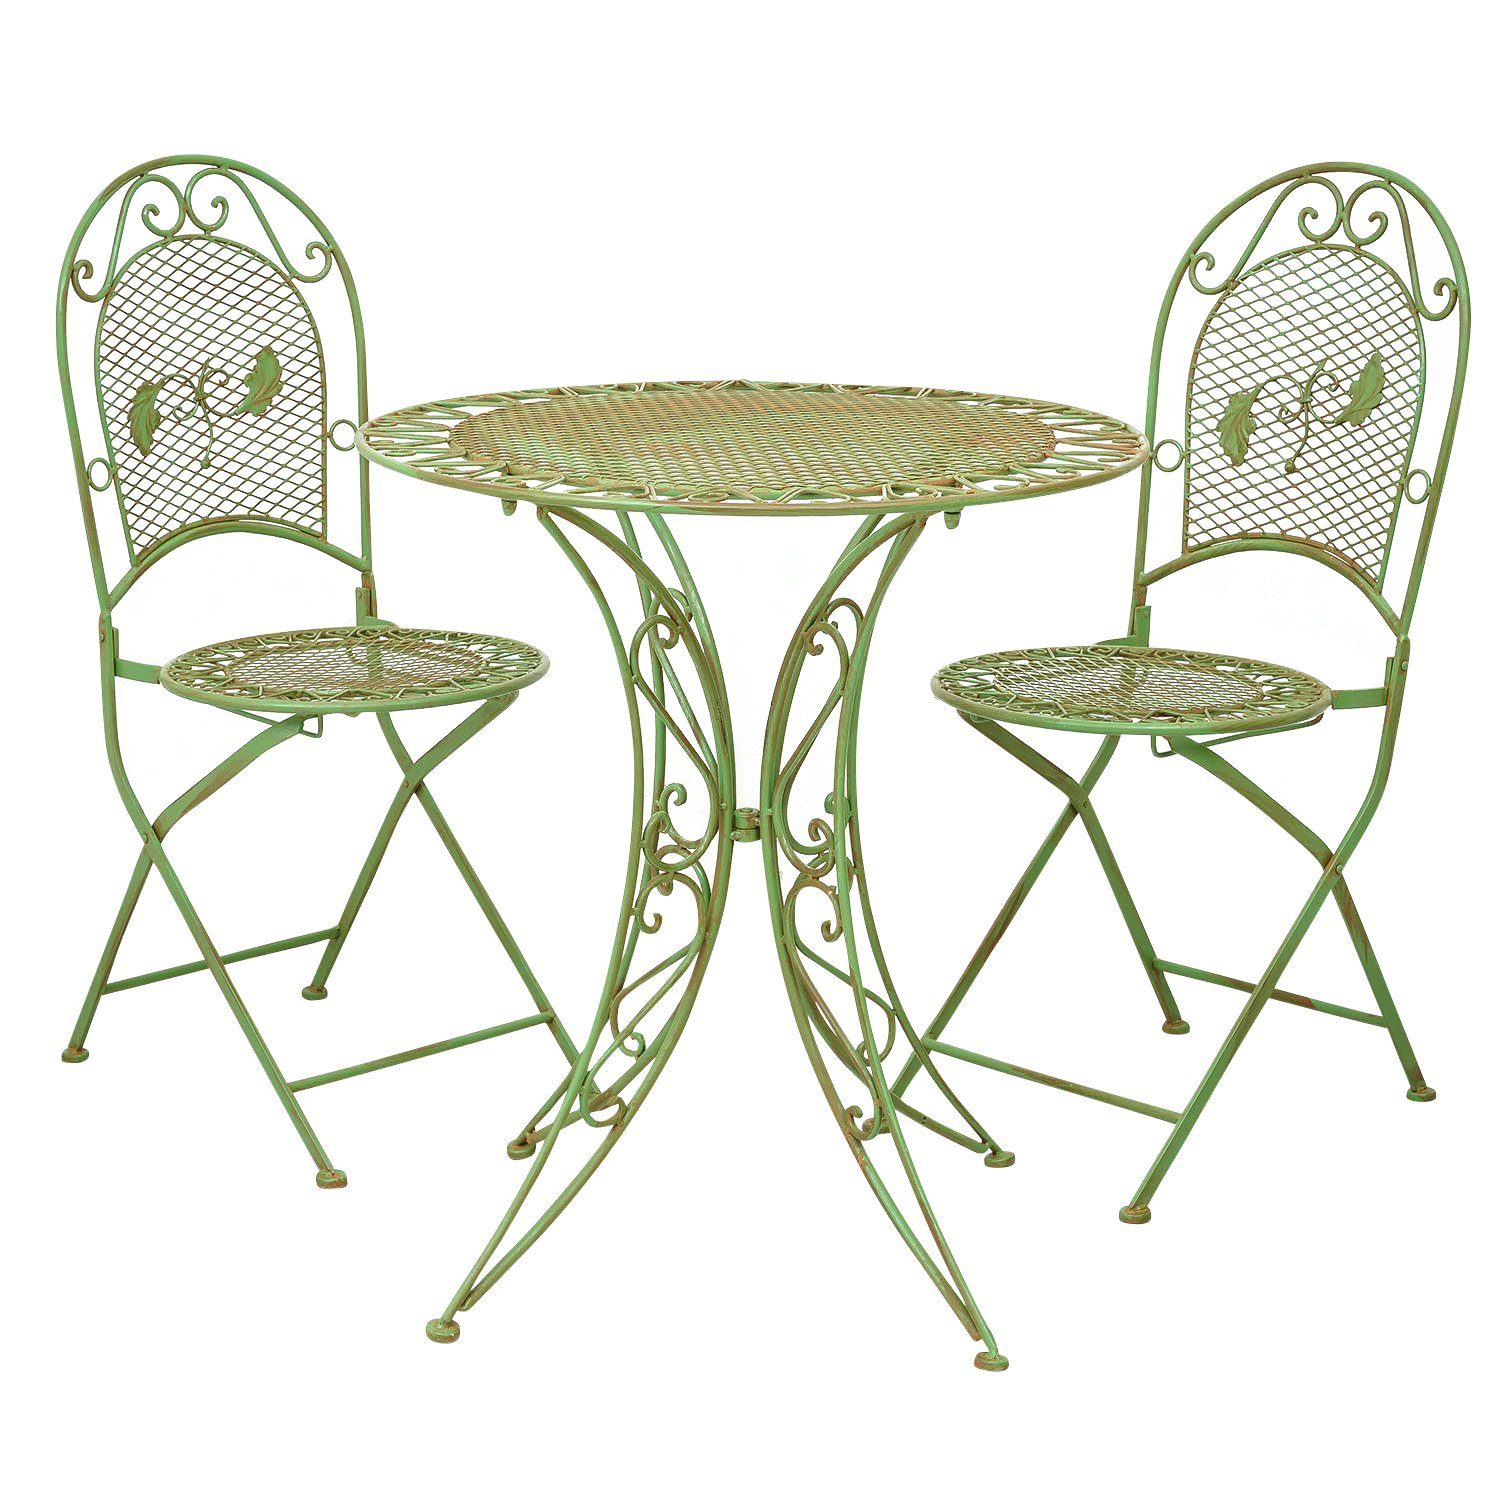 Aubaho Balkonset »Gartentisch + 2x Stuhl Eisen Antik-Stil Gartenmöbel  Gartengarnitur Mobiliar grün« online kaufen | OTTO